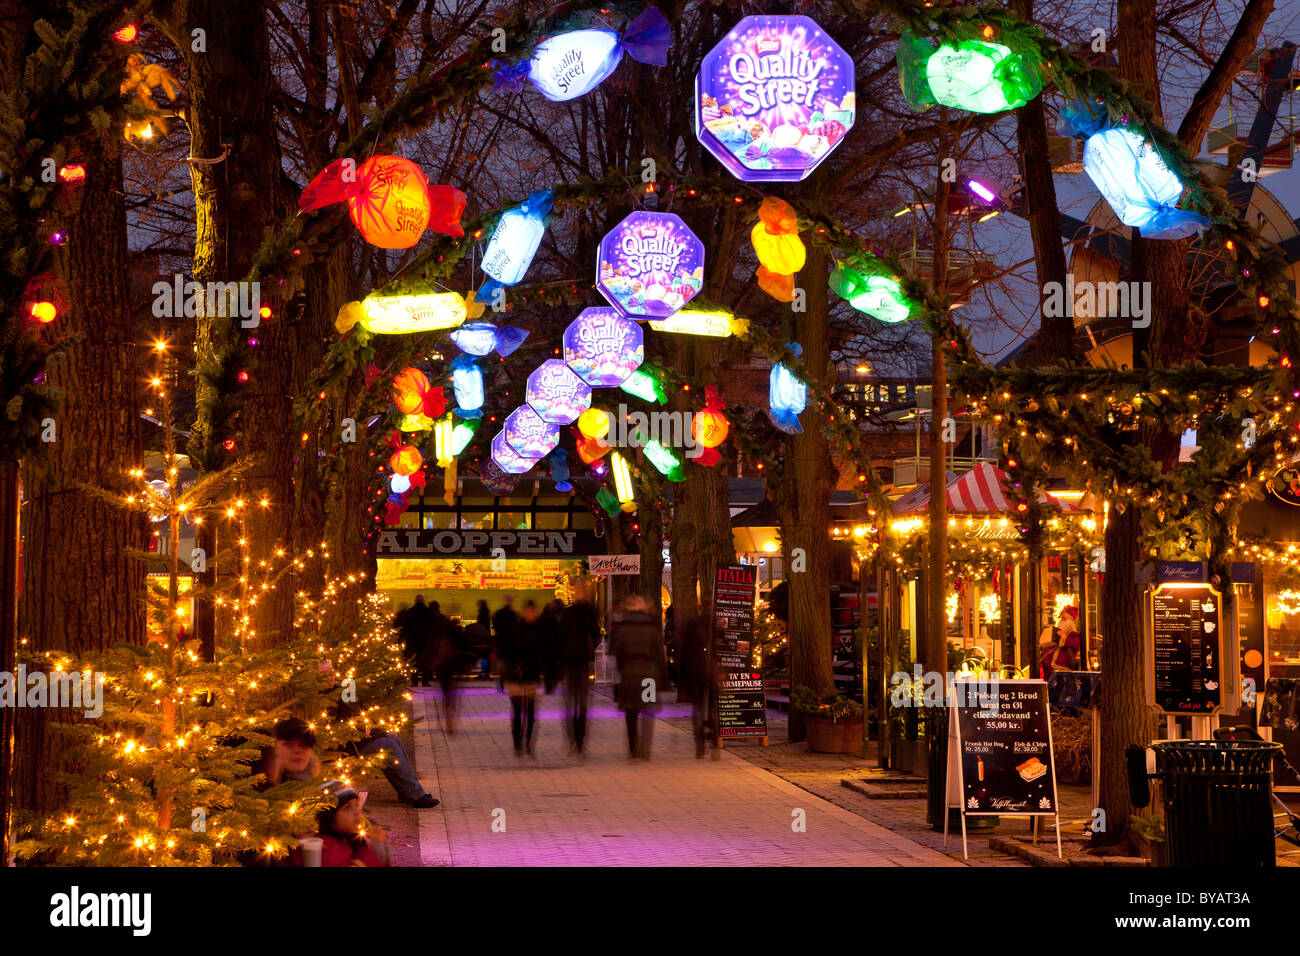 Quality Street, Weihnachten Dekoration, Tivoli, Kopenhagen, Dänemark, Europa Stockfoto